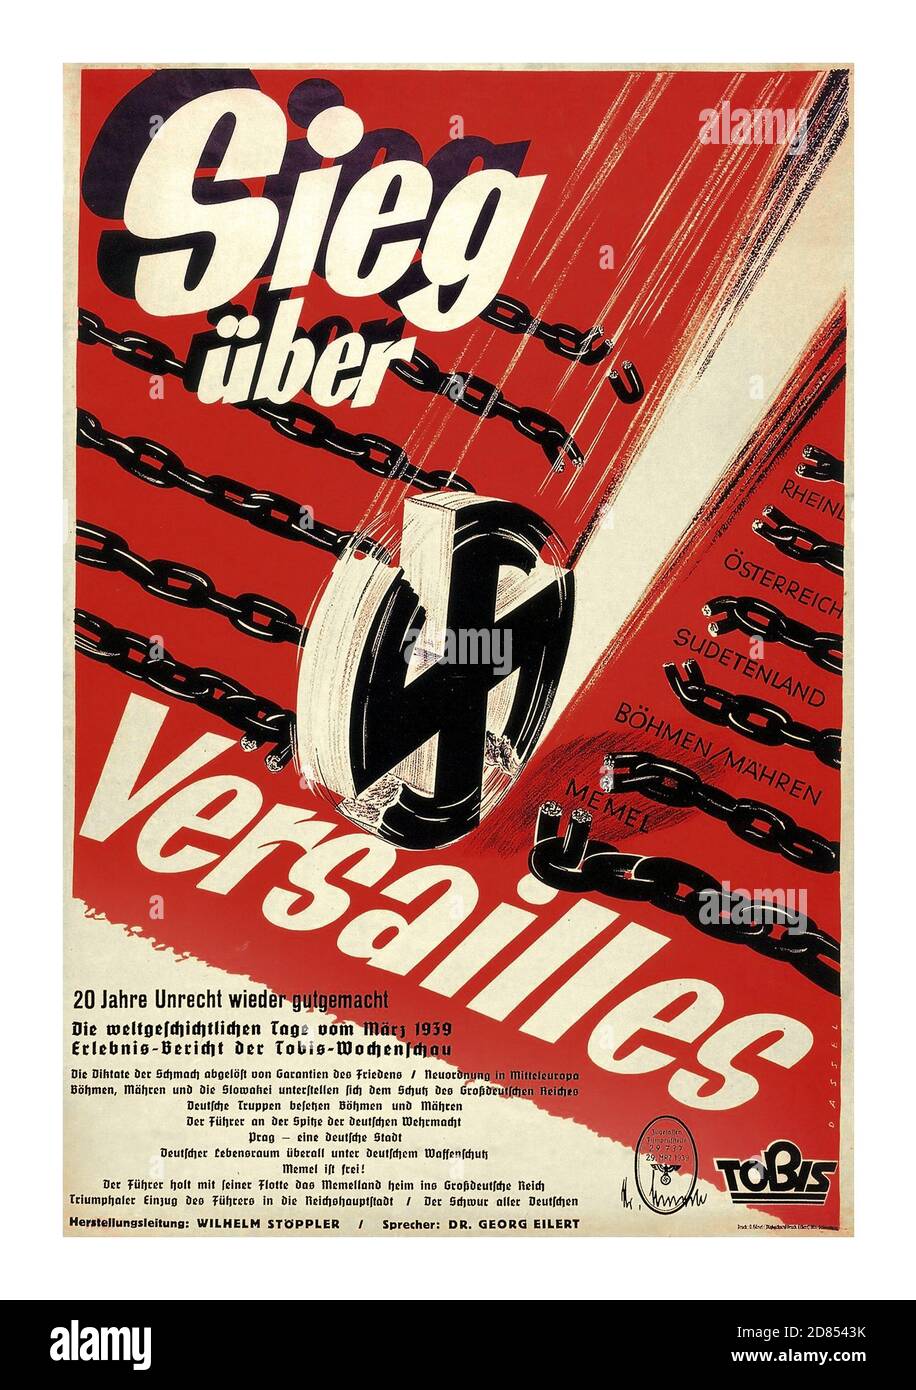 Vintage des années 1930 le film de propagande nazie affiche 'SEIG uber VERSAILLES' 1939 'victoire sur Versailles en 1939' 'nazi sieg uber versailles' '20 ans d'injustice fait le bien' affiche de propagande nazie illustrant l'emblème Swastika coupant à travers les chaînes de métal de Rheinland, Ostereich, Sudetanland, Bohmen Mahren,Memel. Banque D'Images